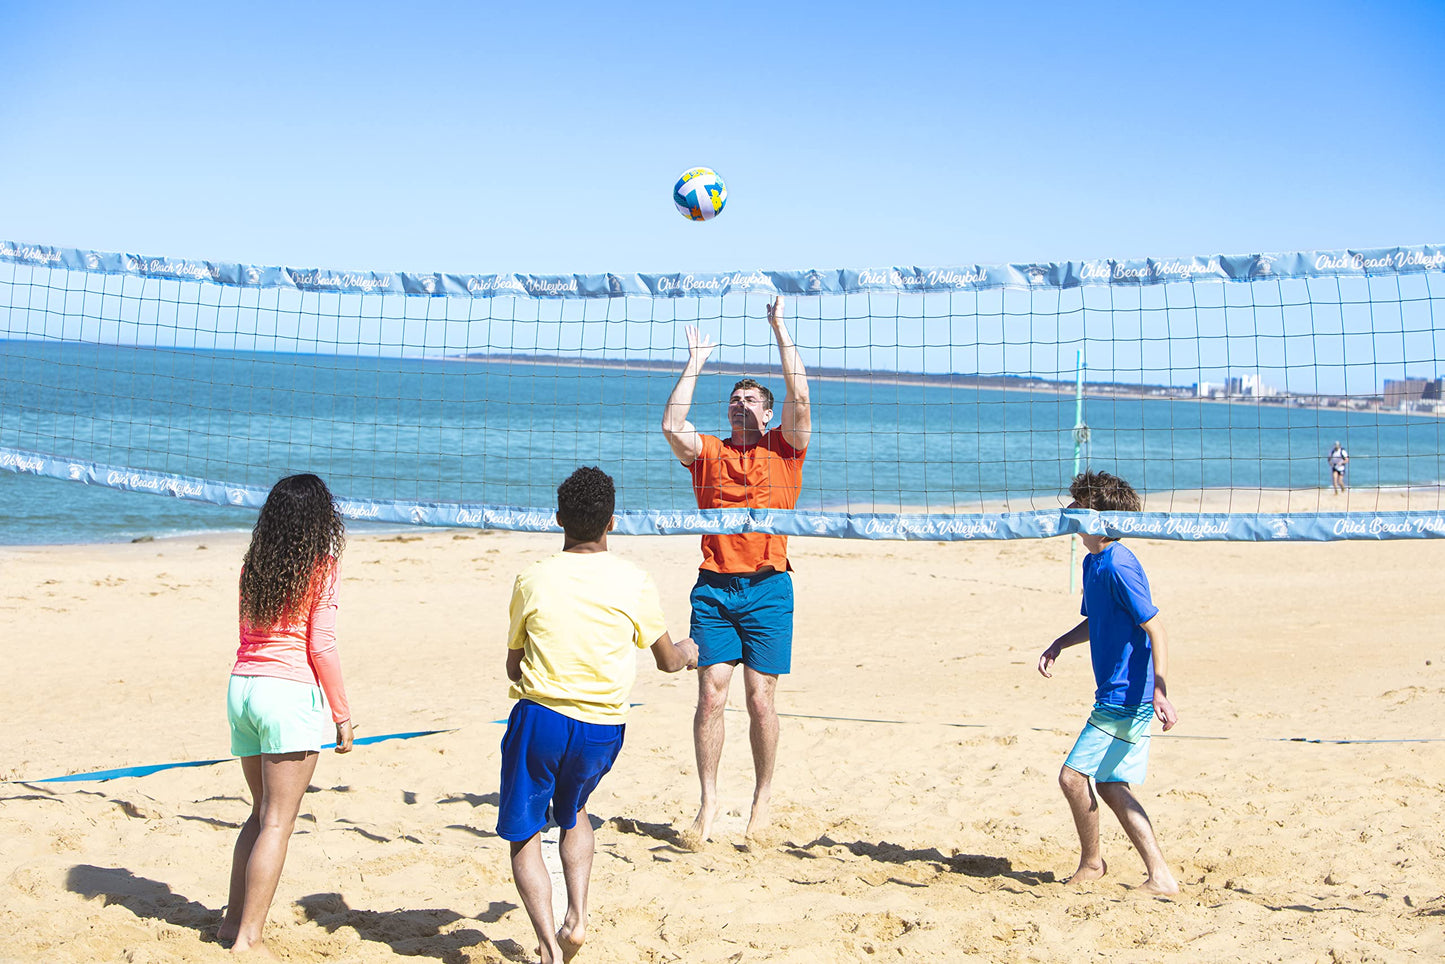 WAHU Volleyball Vert - Matériau en néoprène souple 100% imperméable pour jouer dans et hors de l'eau - Taille réglementaire 5,Green